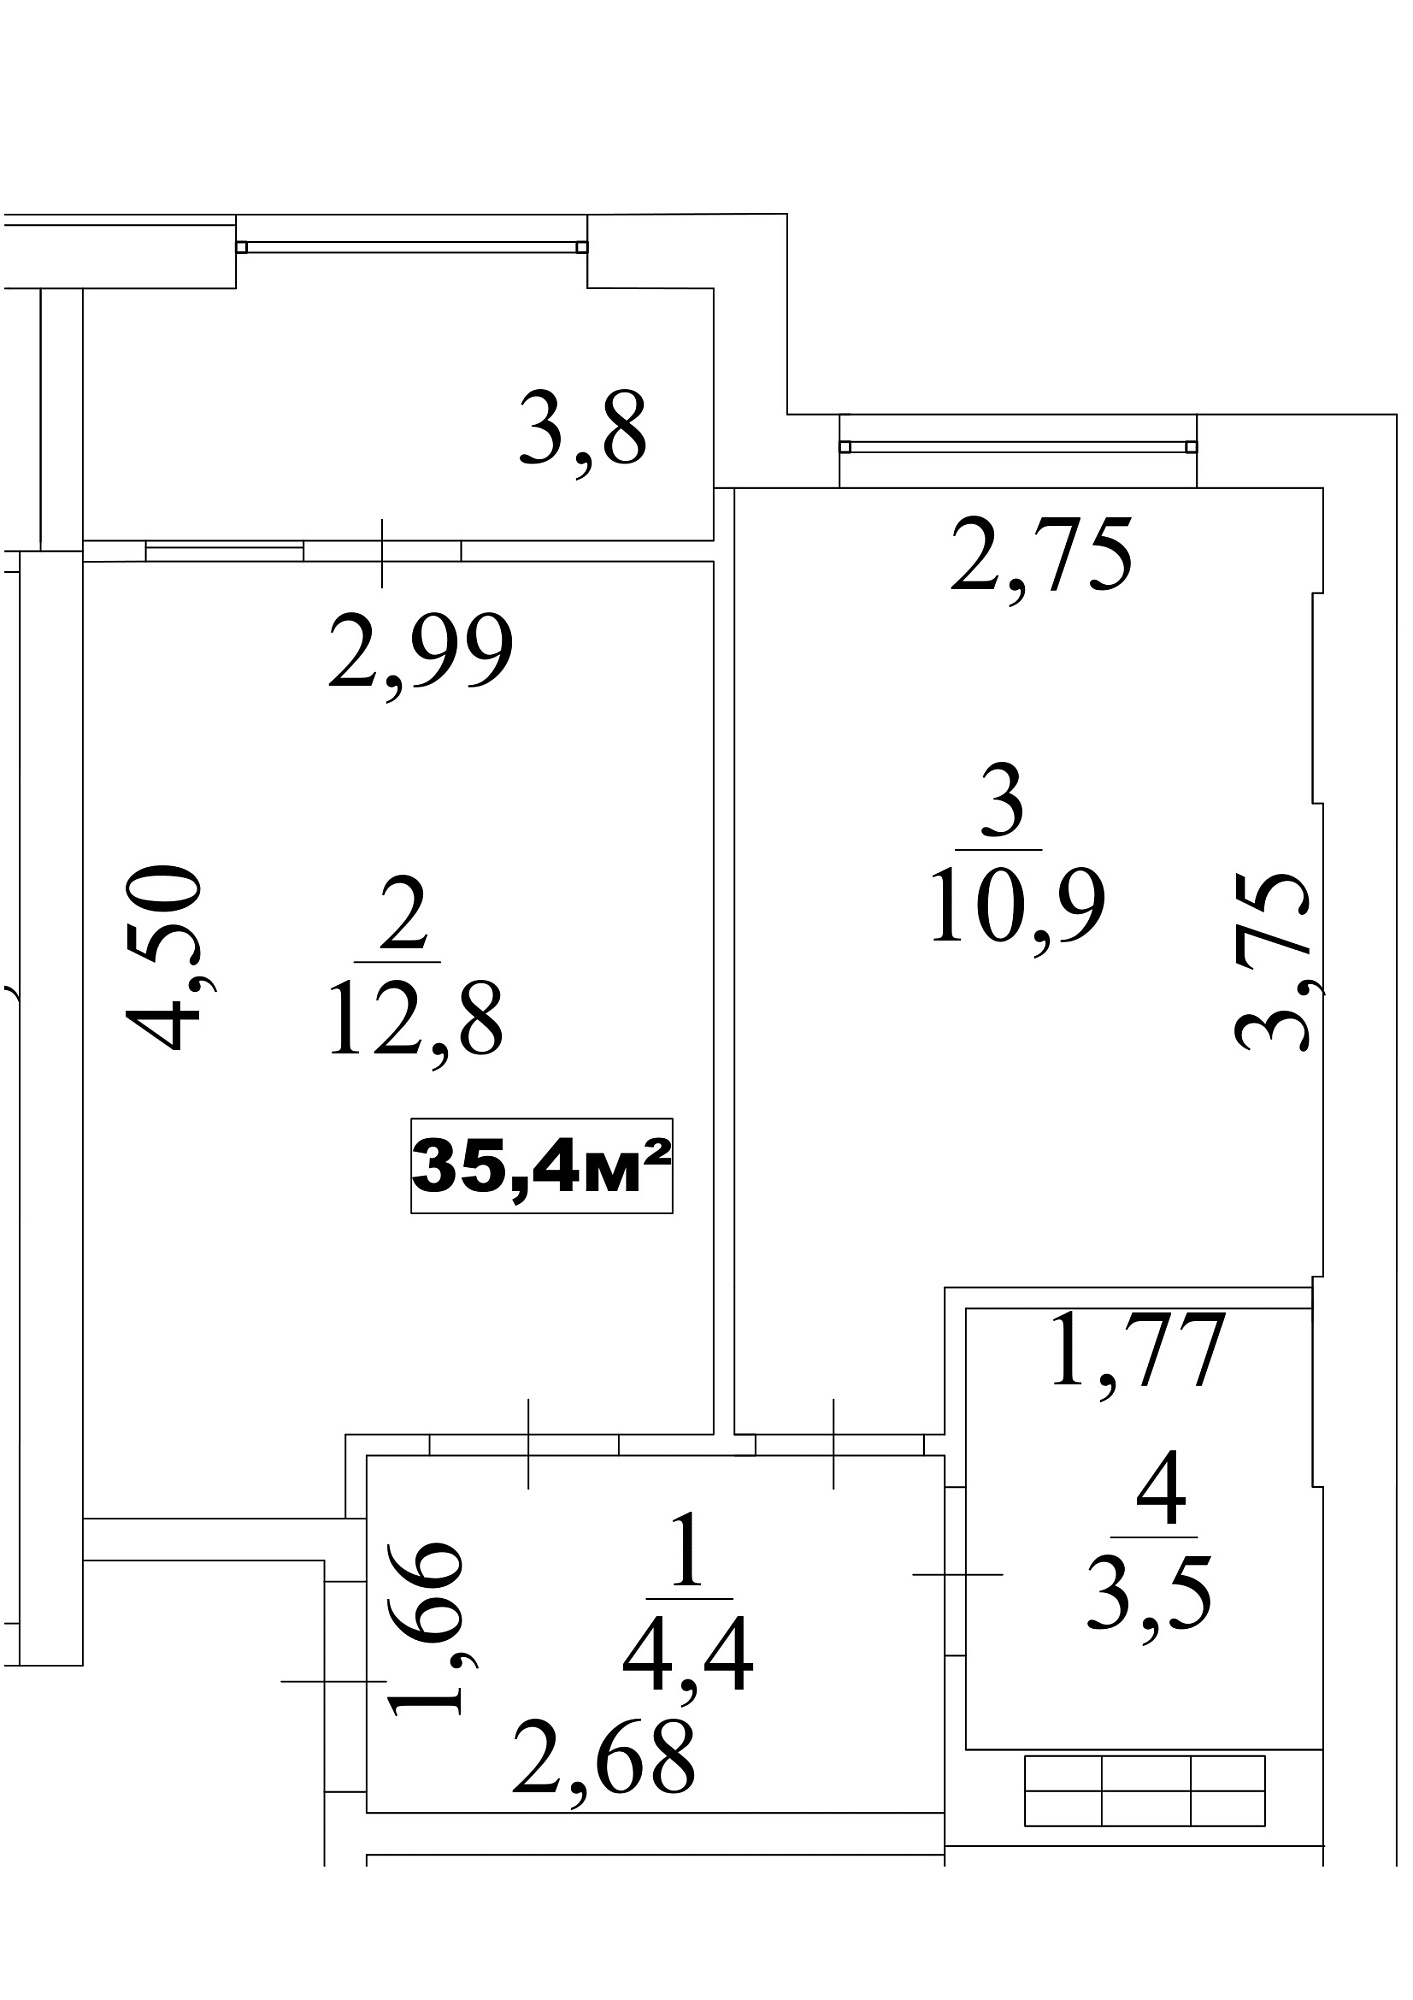 Планировка 1-к квартира площей 35.4м2, AB-10-01/0007б.